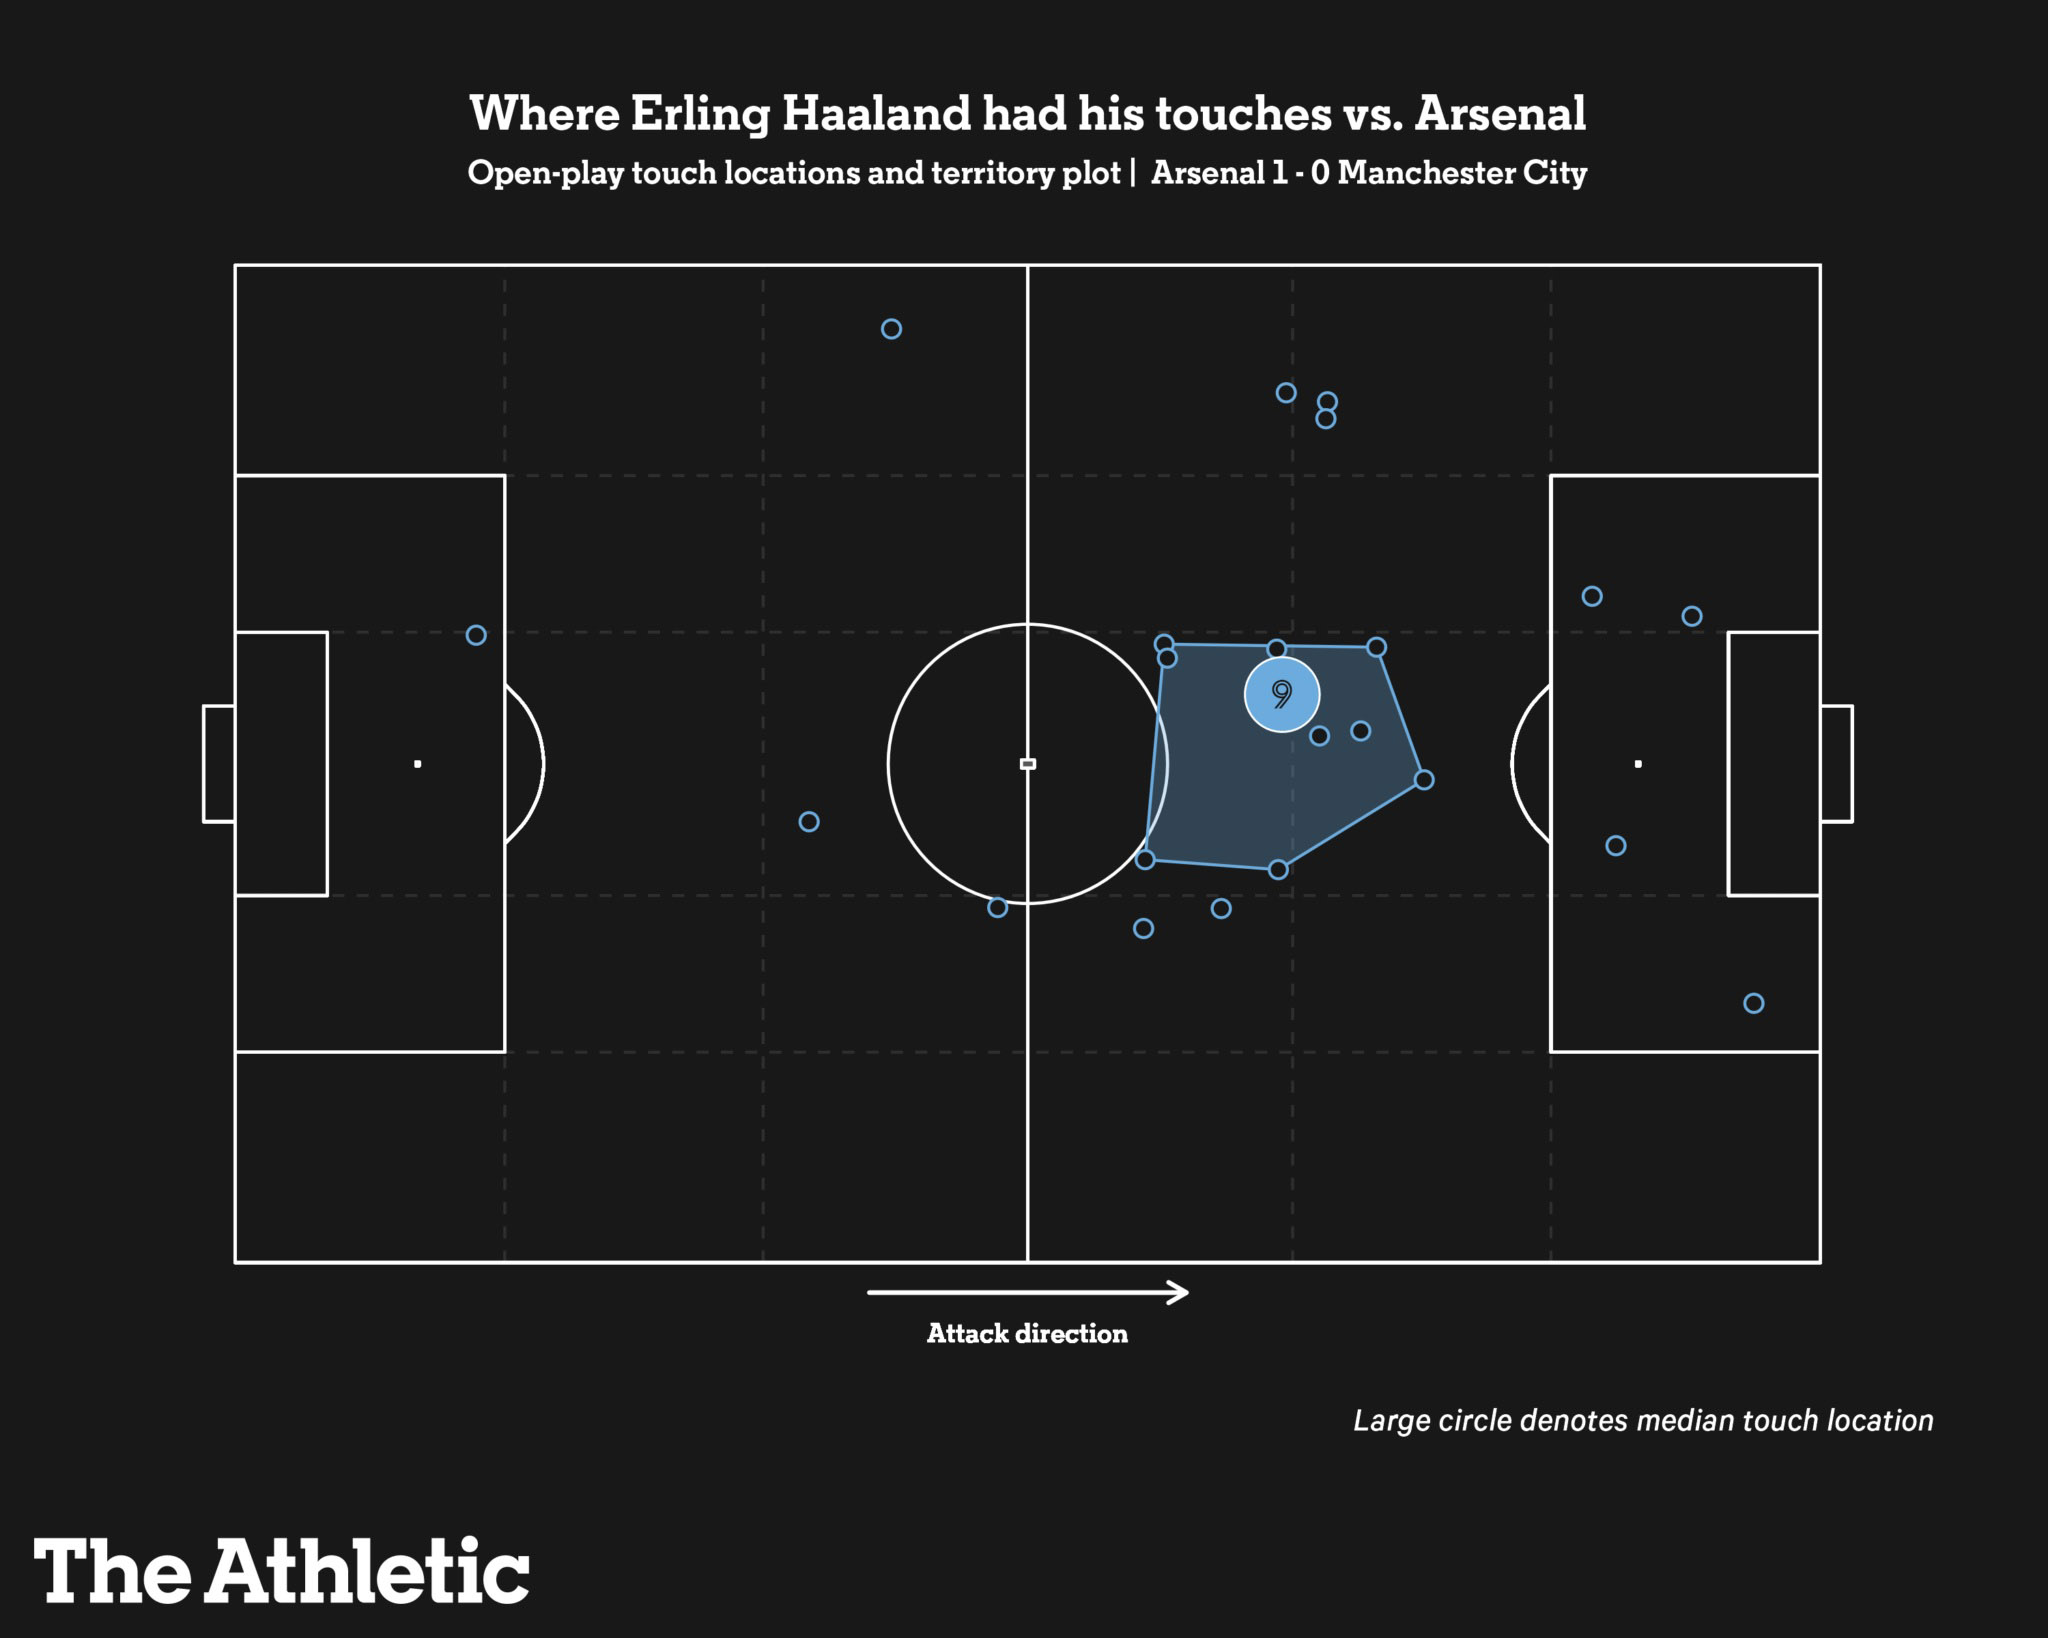 Phạm vi hoạt động trung bình và các điểm chạm bóng của Haaland trong trận đấu chỉ ó xG bằng 0. Ảnh: The Athletic